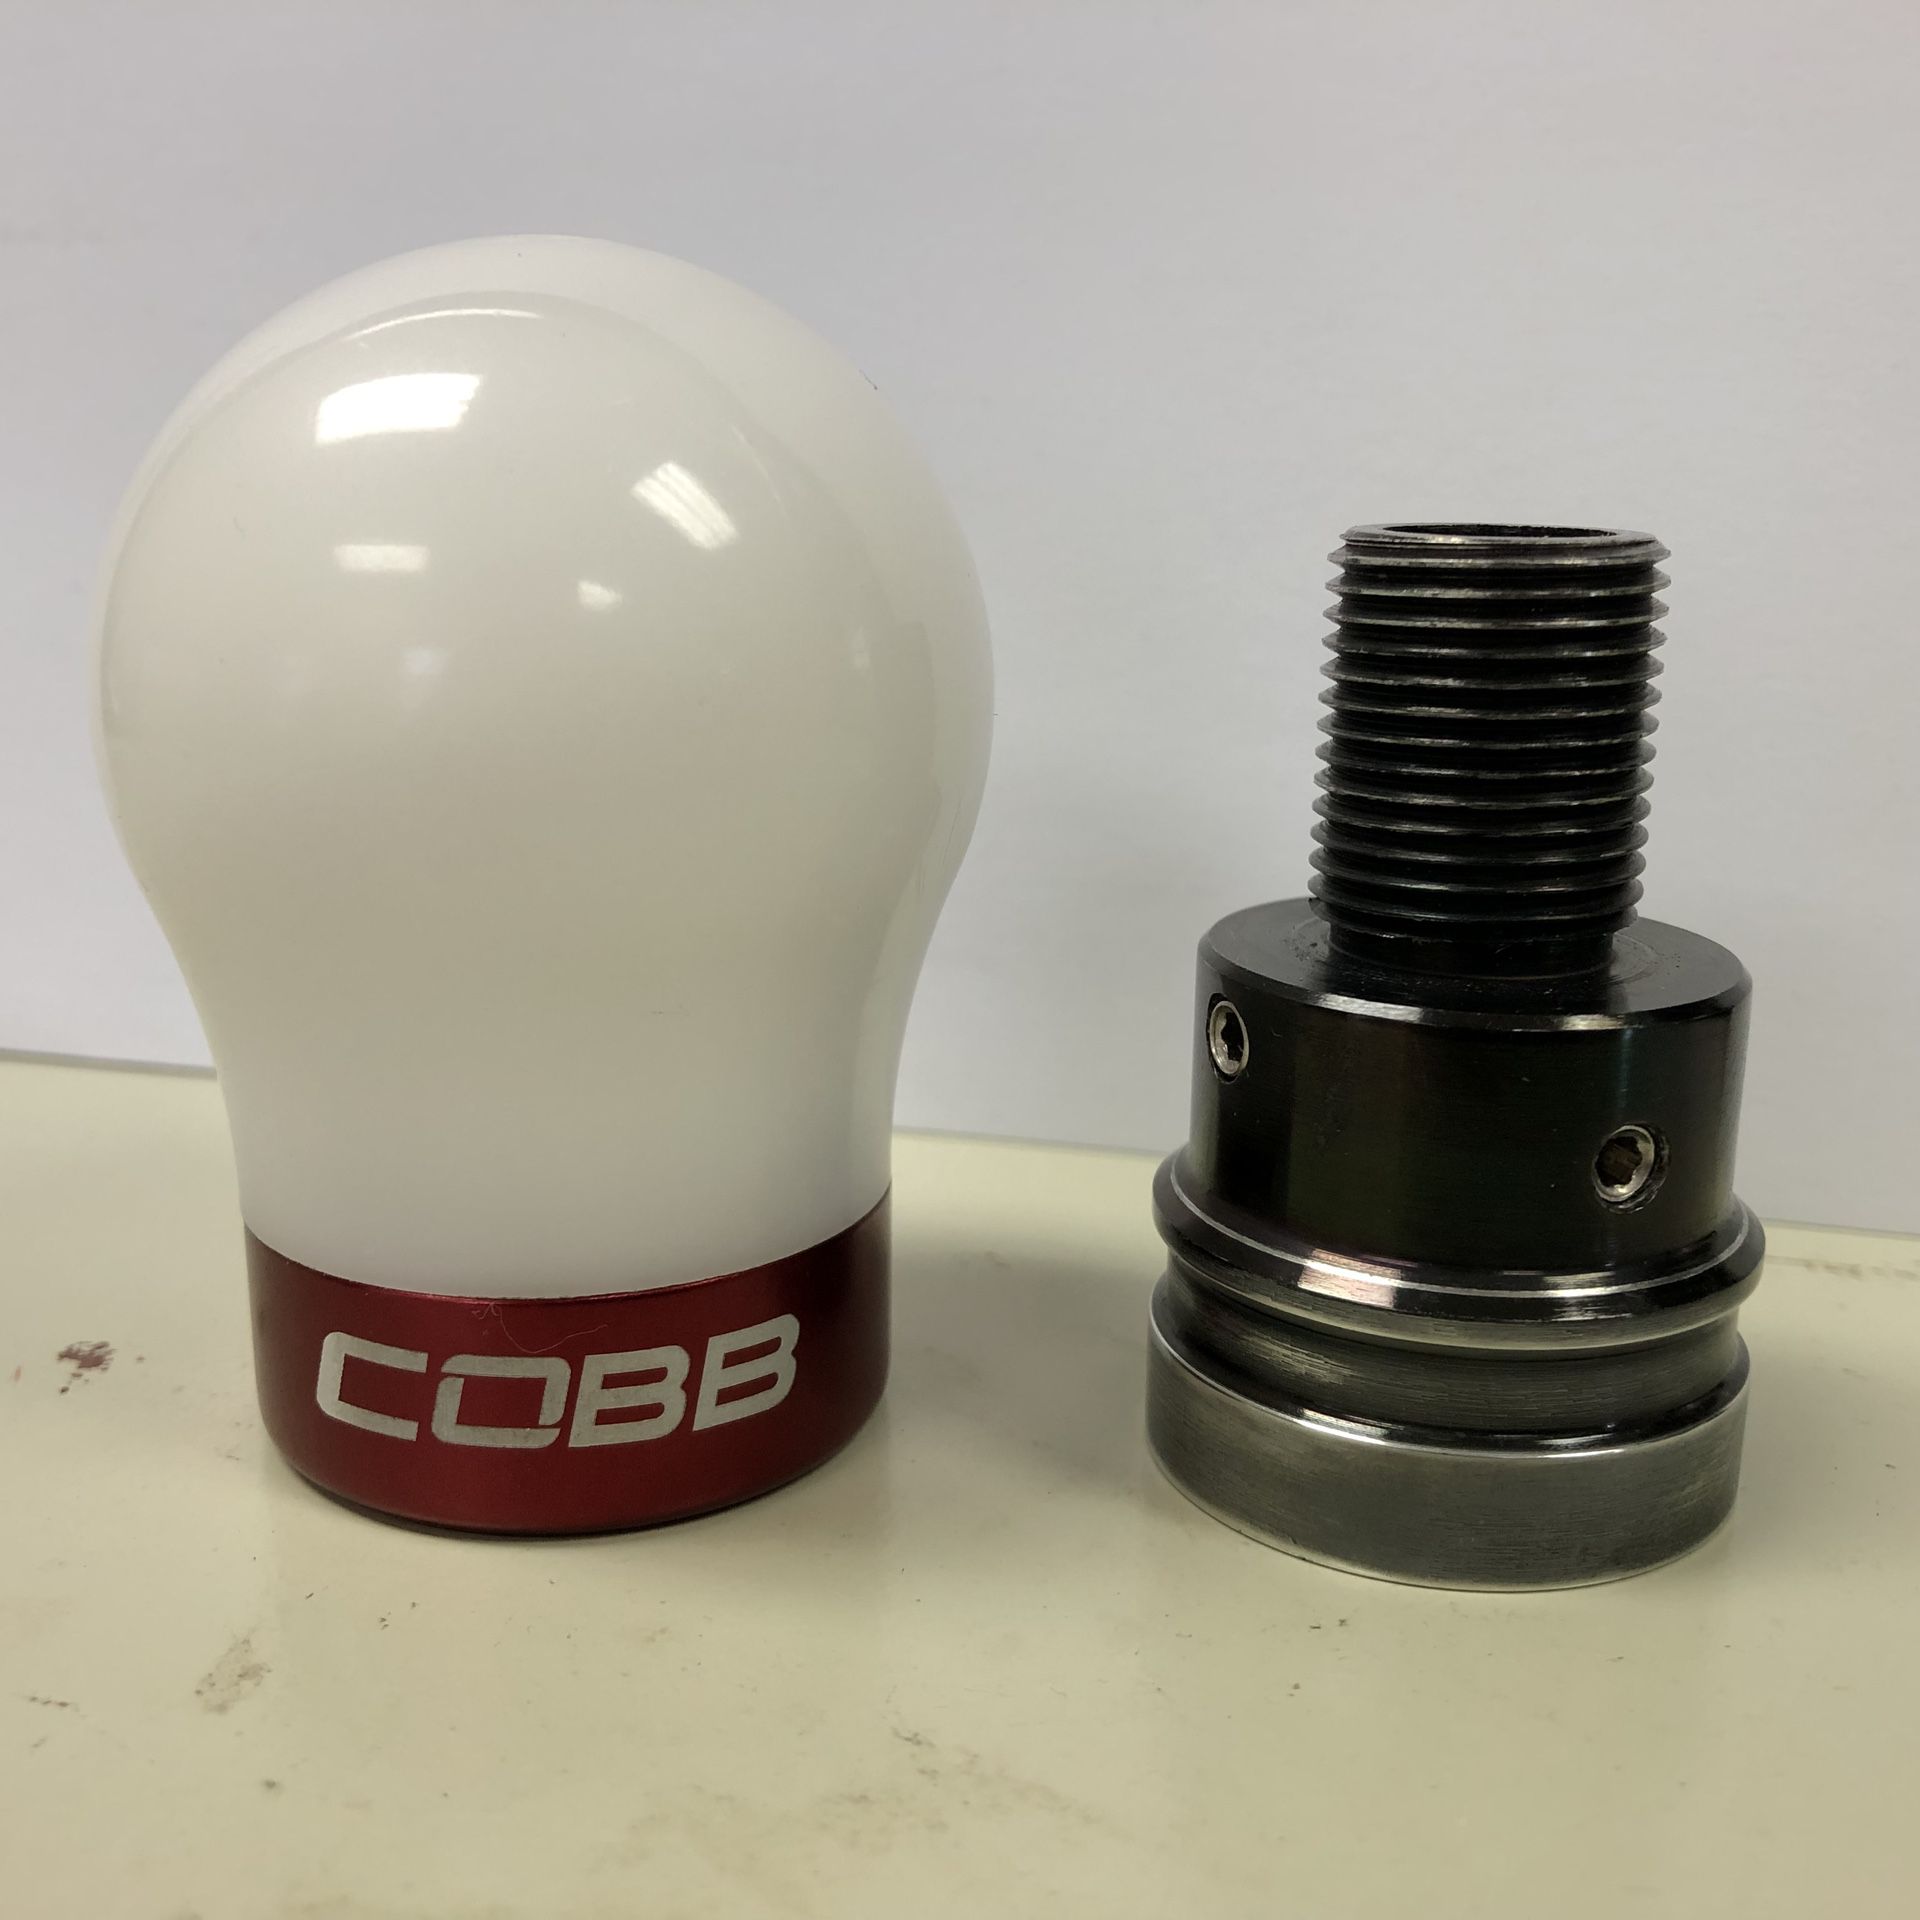 cobb shift knob